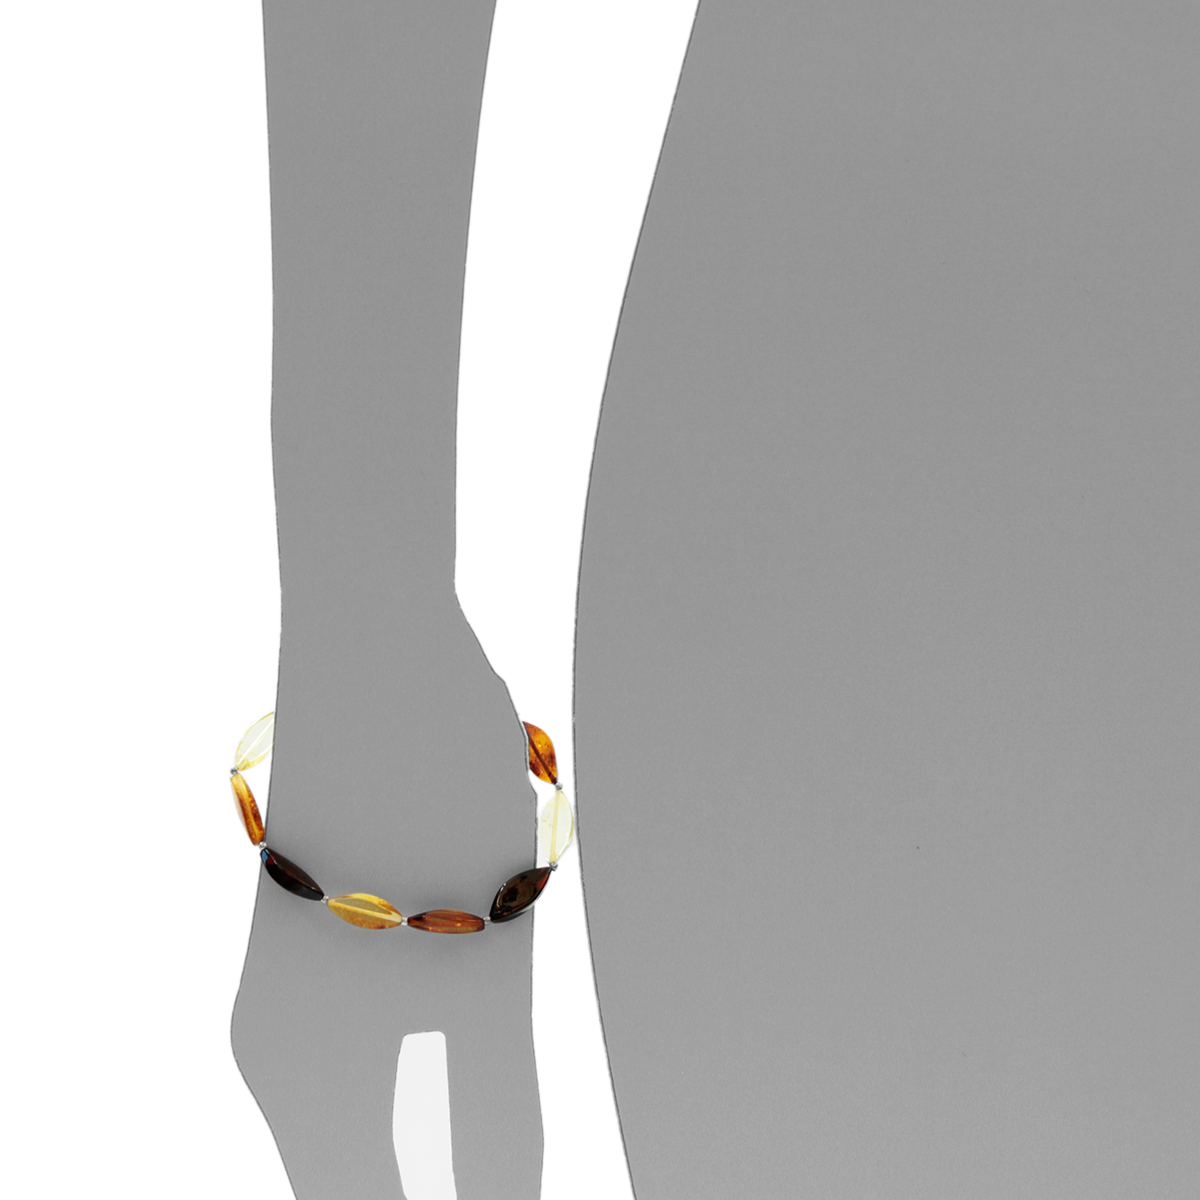 Bernsteinarmband, 19 cm, Gummizug, navetteform